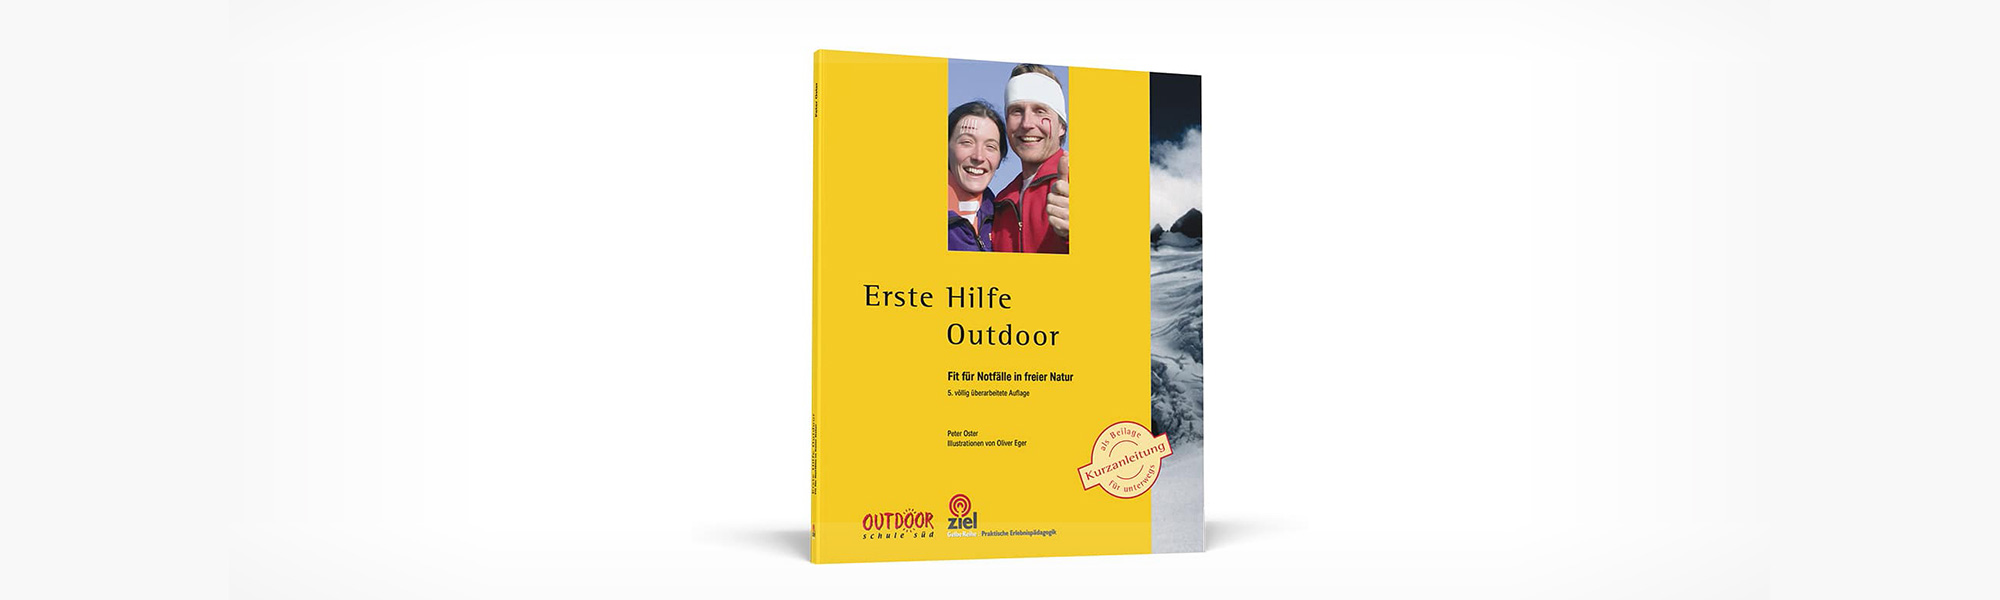 Erste Hilfe Outdoor Buch 24,80 EUR